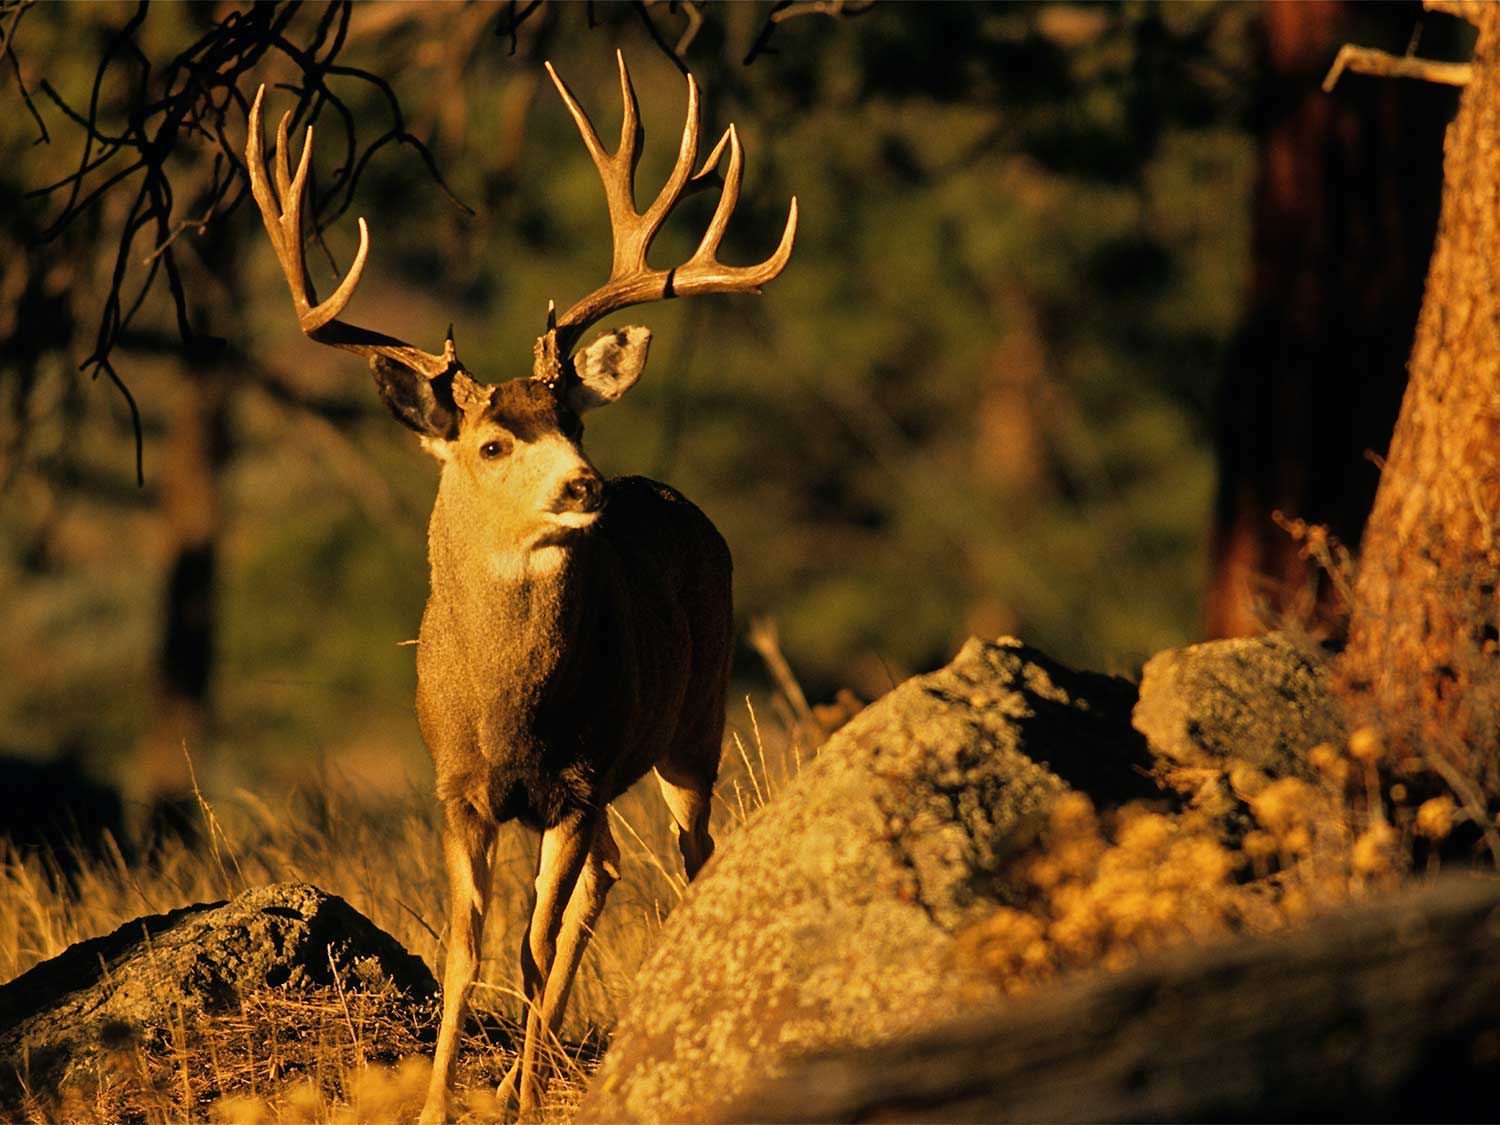 Deer Movement Chart Arkansas